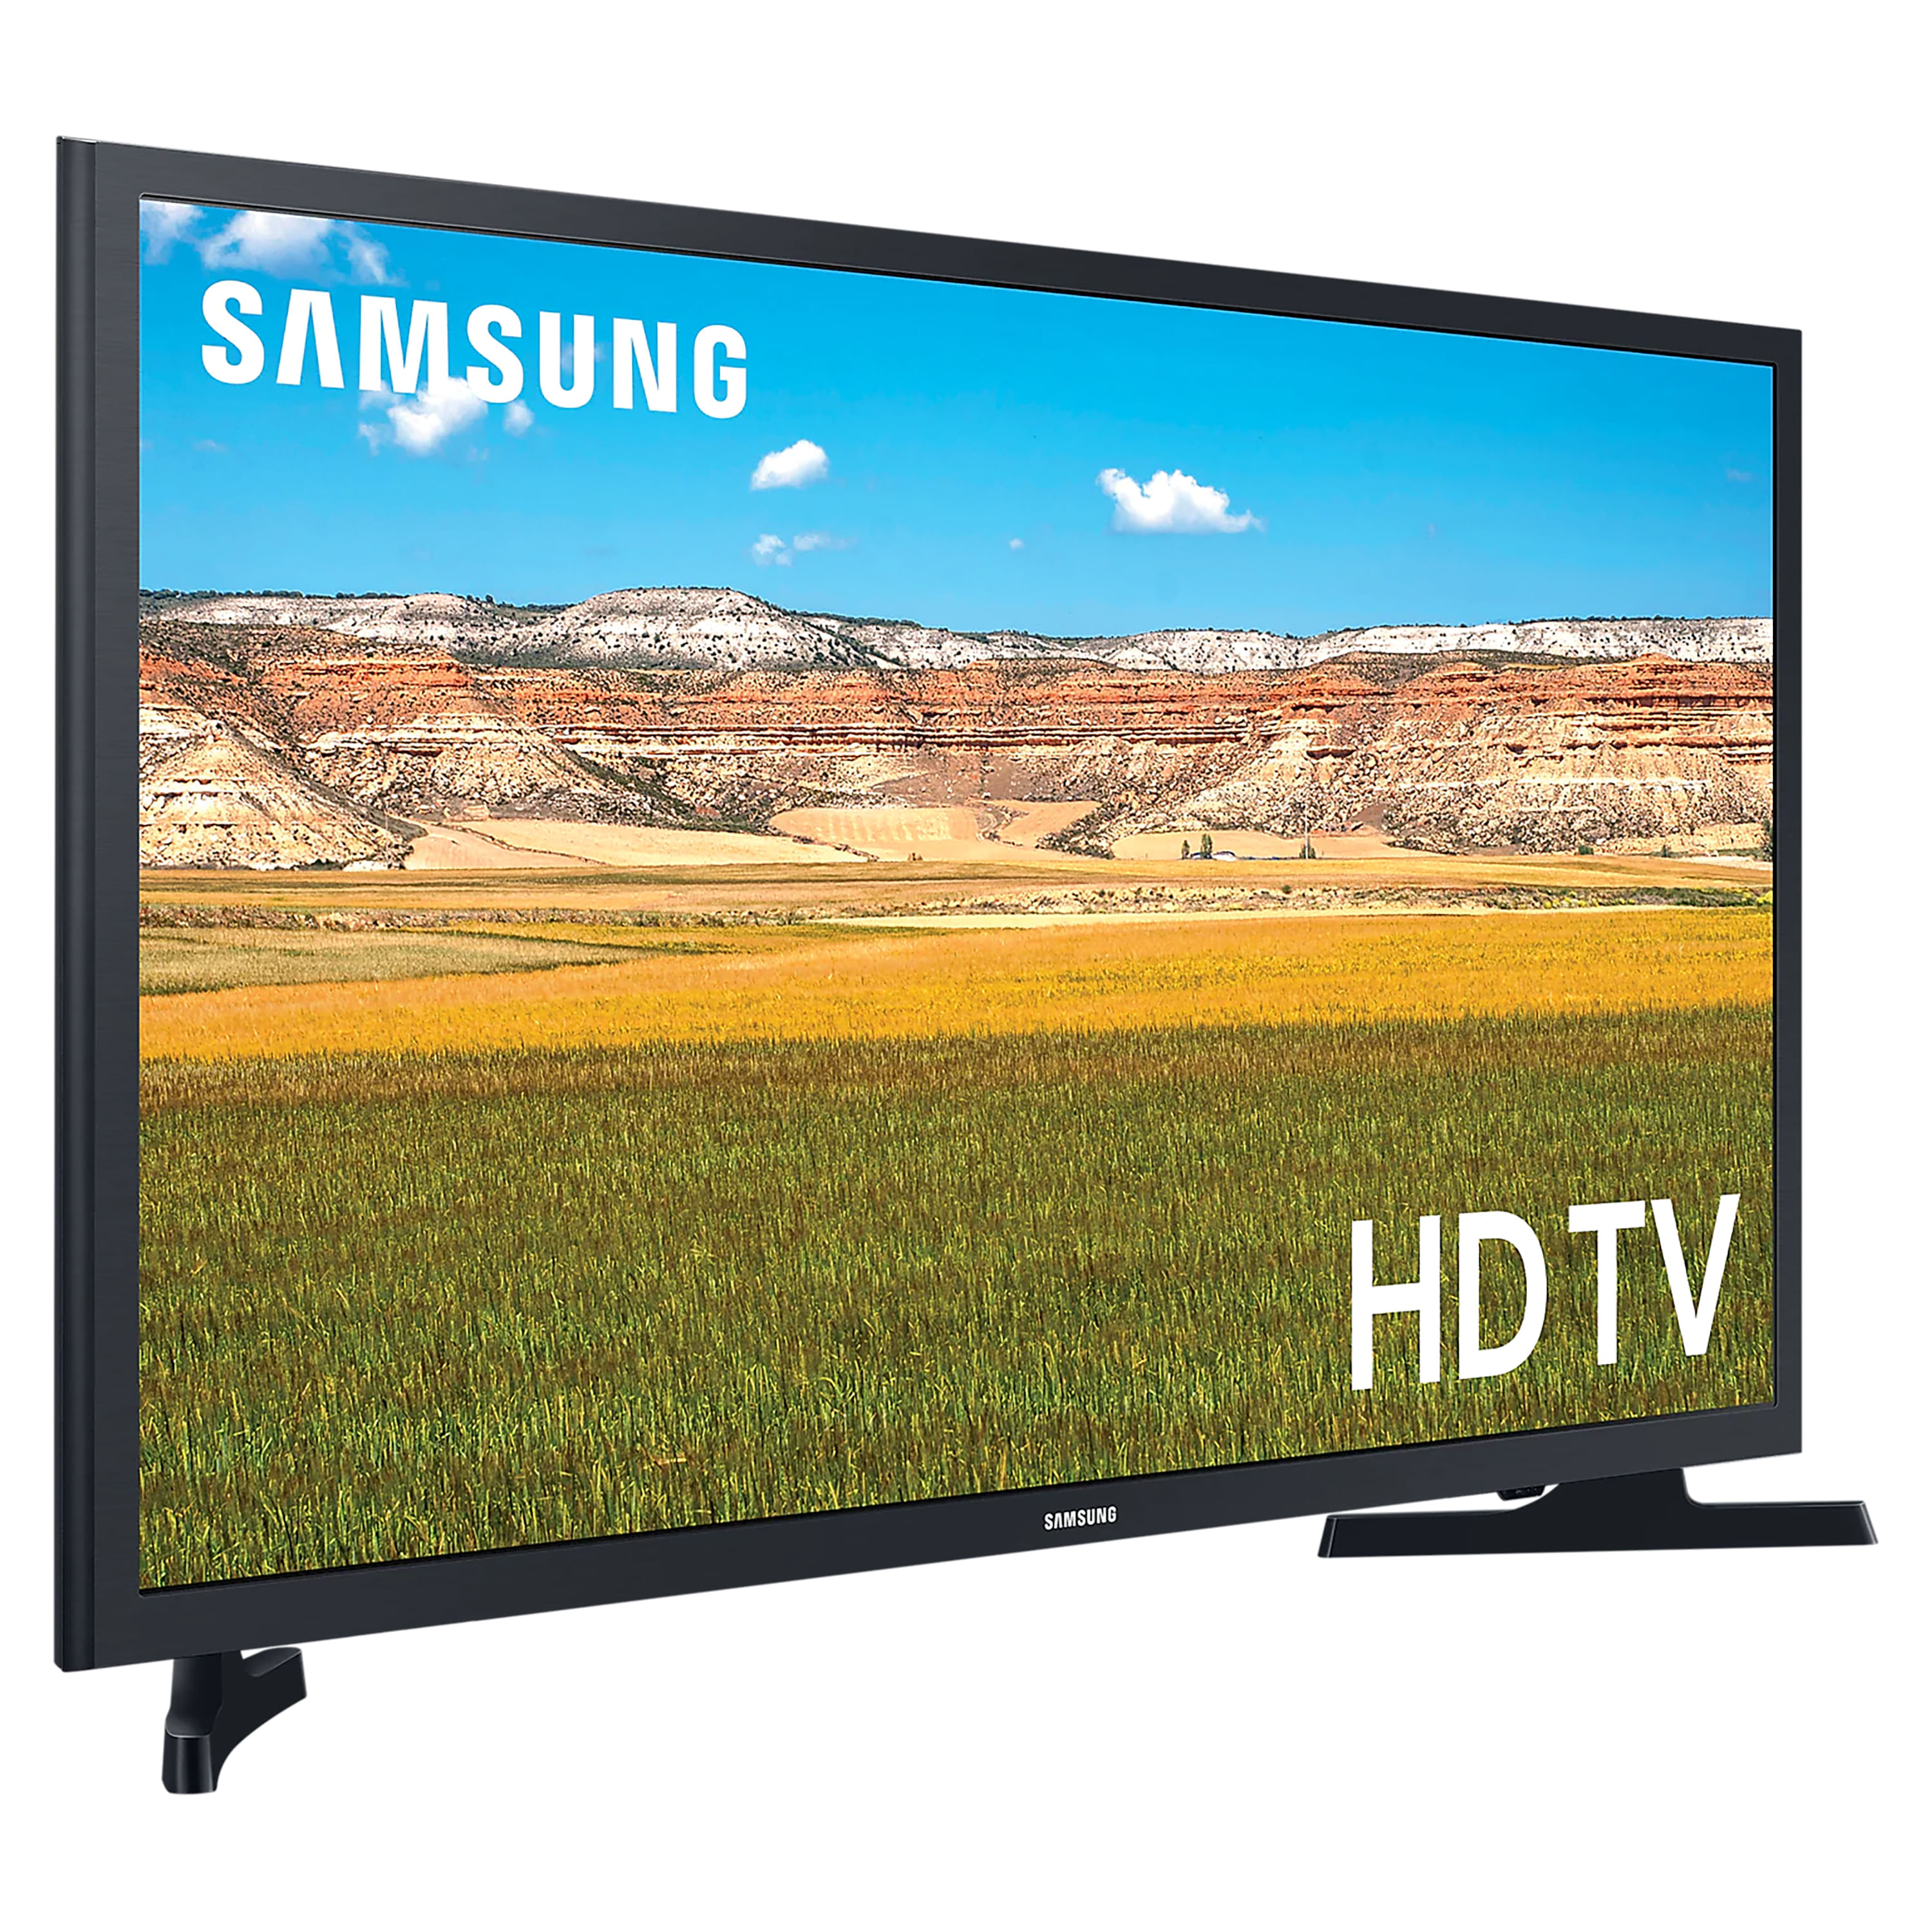 Comprar Pantalla Smart TV Samsung Led De 32 Pulgadas, Modelo:UN32T4300